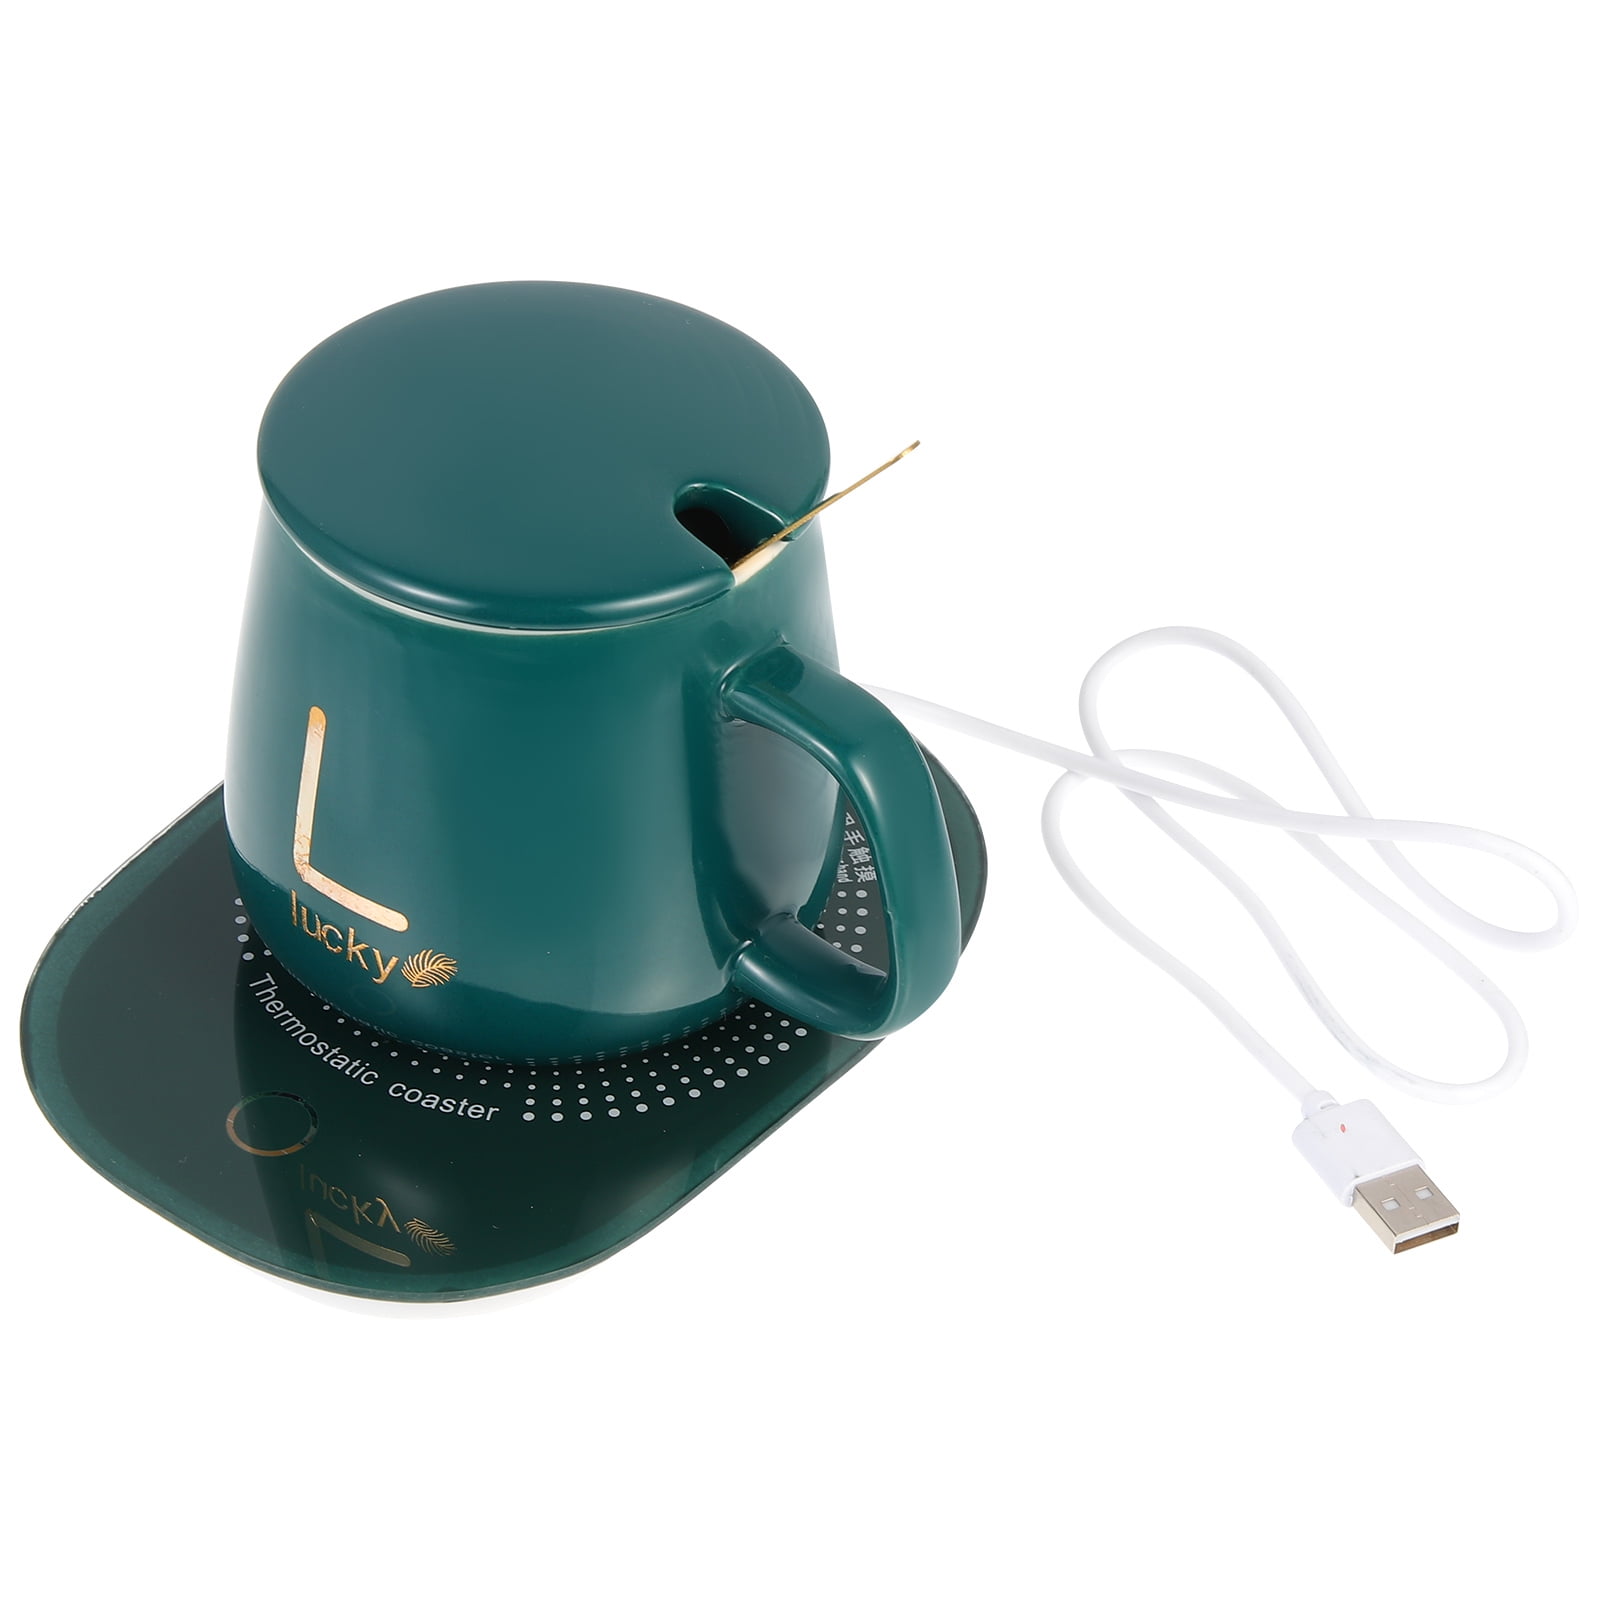 Donut Mug Warmer USB Coaster Office Desk Decor – Little Tigress LLC